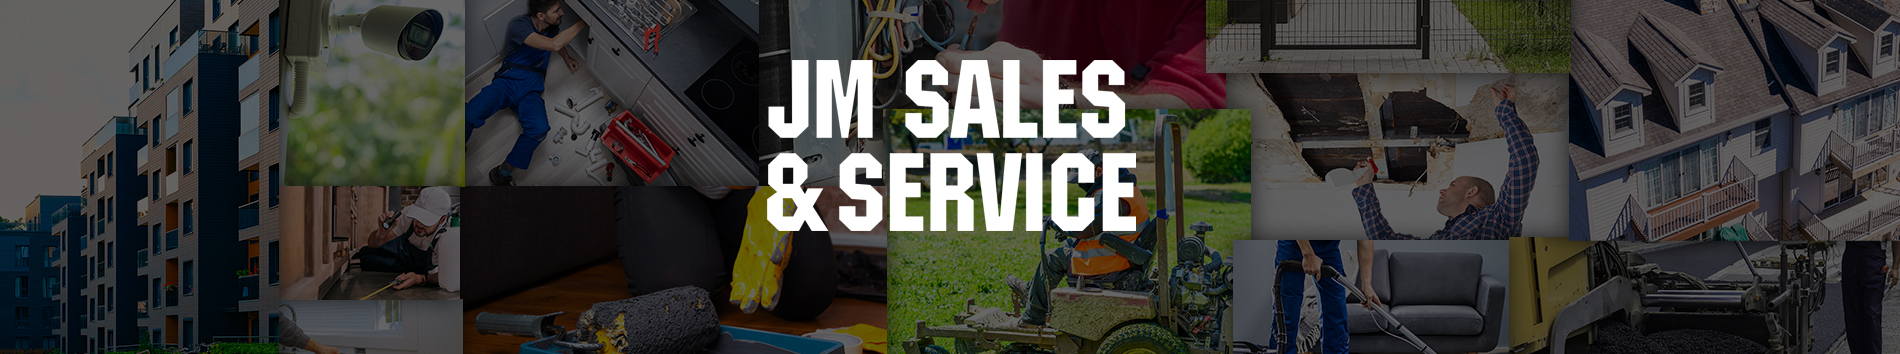 JM Sales & Service